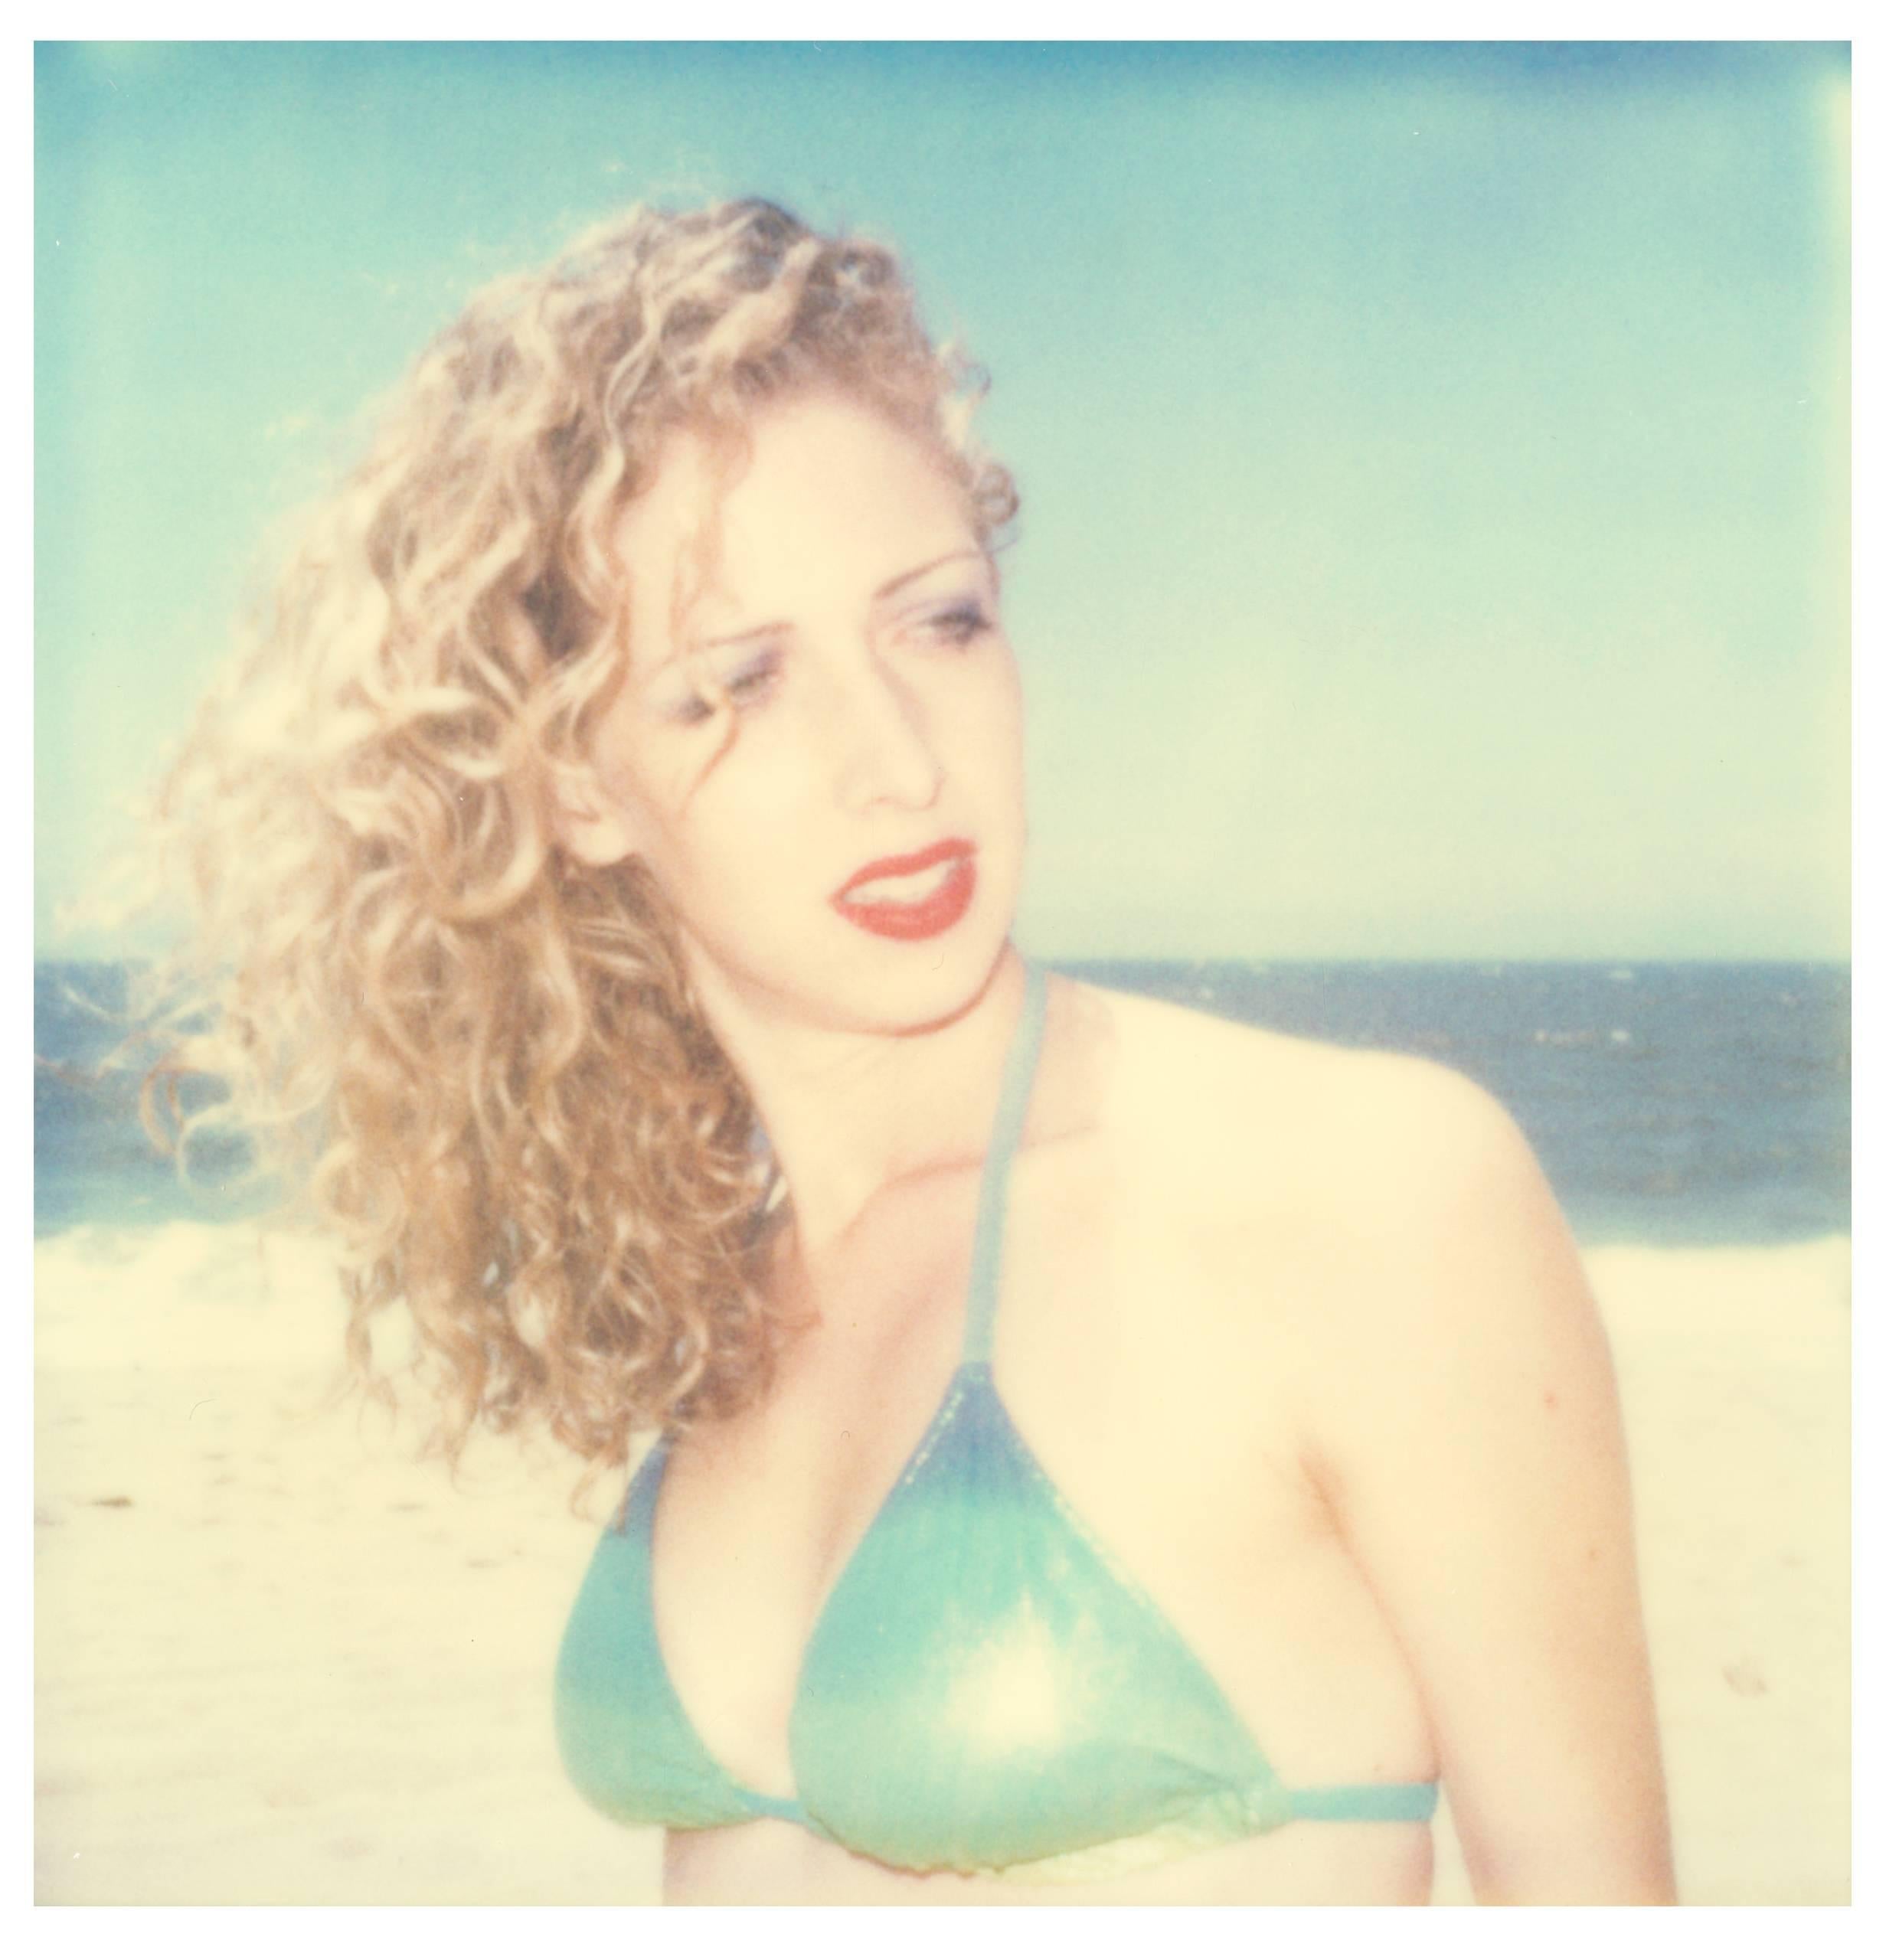 Stefanie Schneider Portrait Photograph - Kelly II (Beachshoot) - Contemporary, 21st century, Polaroid, Portrait